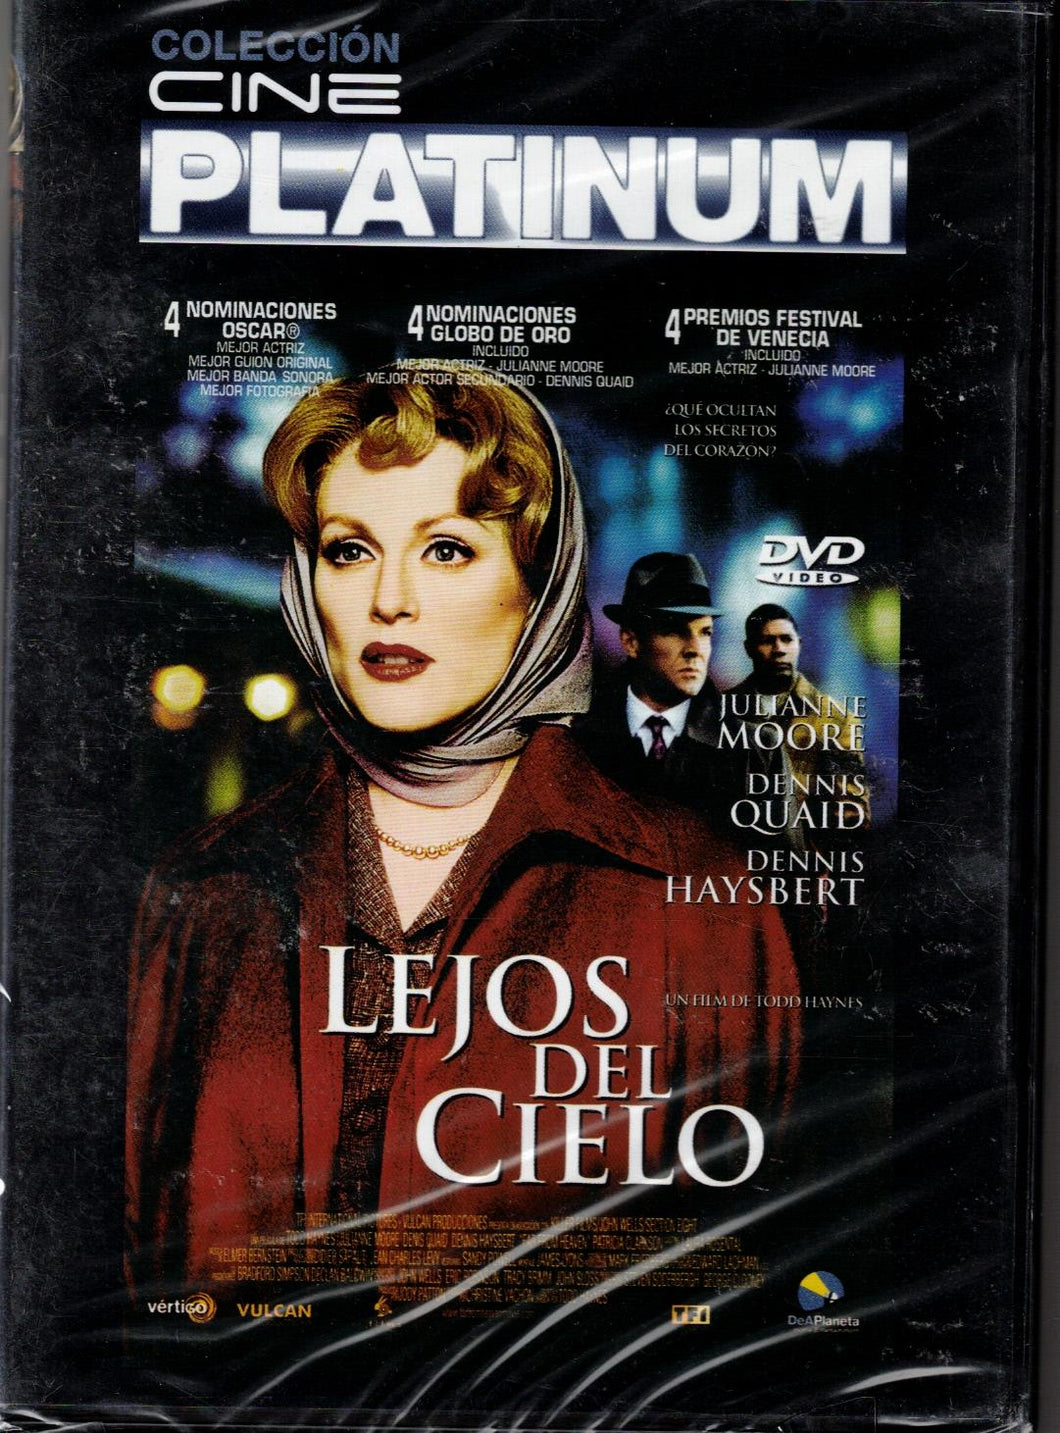 Lejos del cielo (Far from Heaven) (DVD Nuevo)